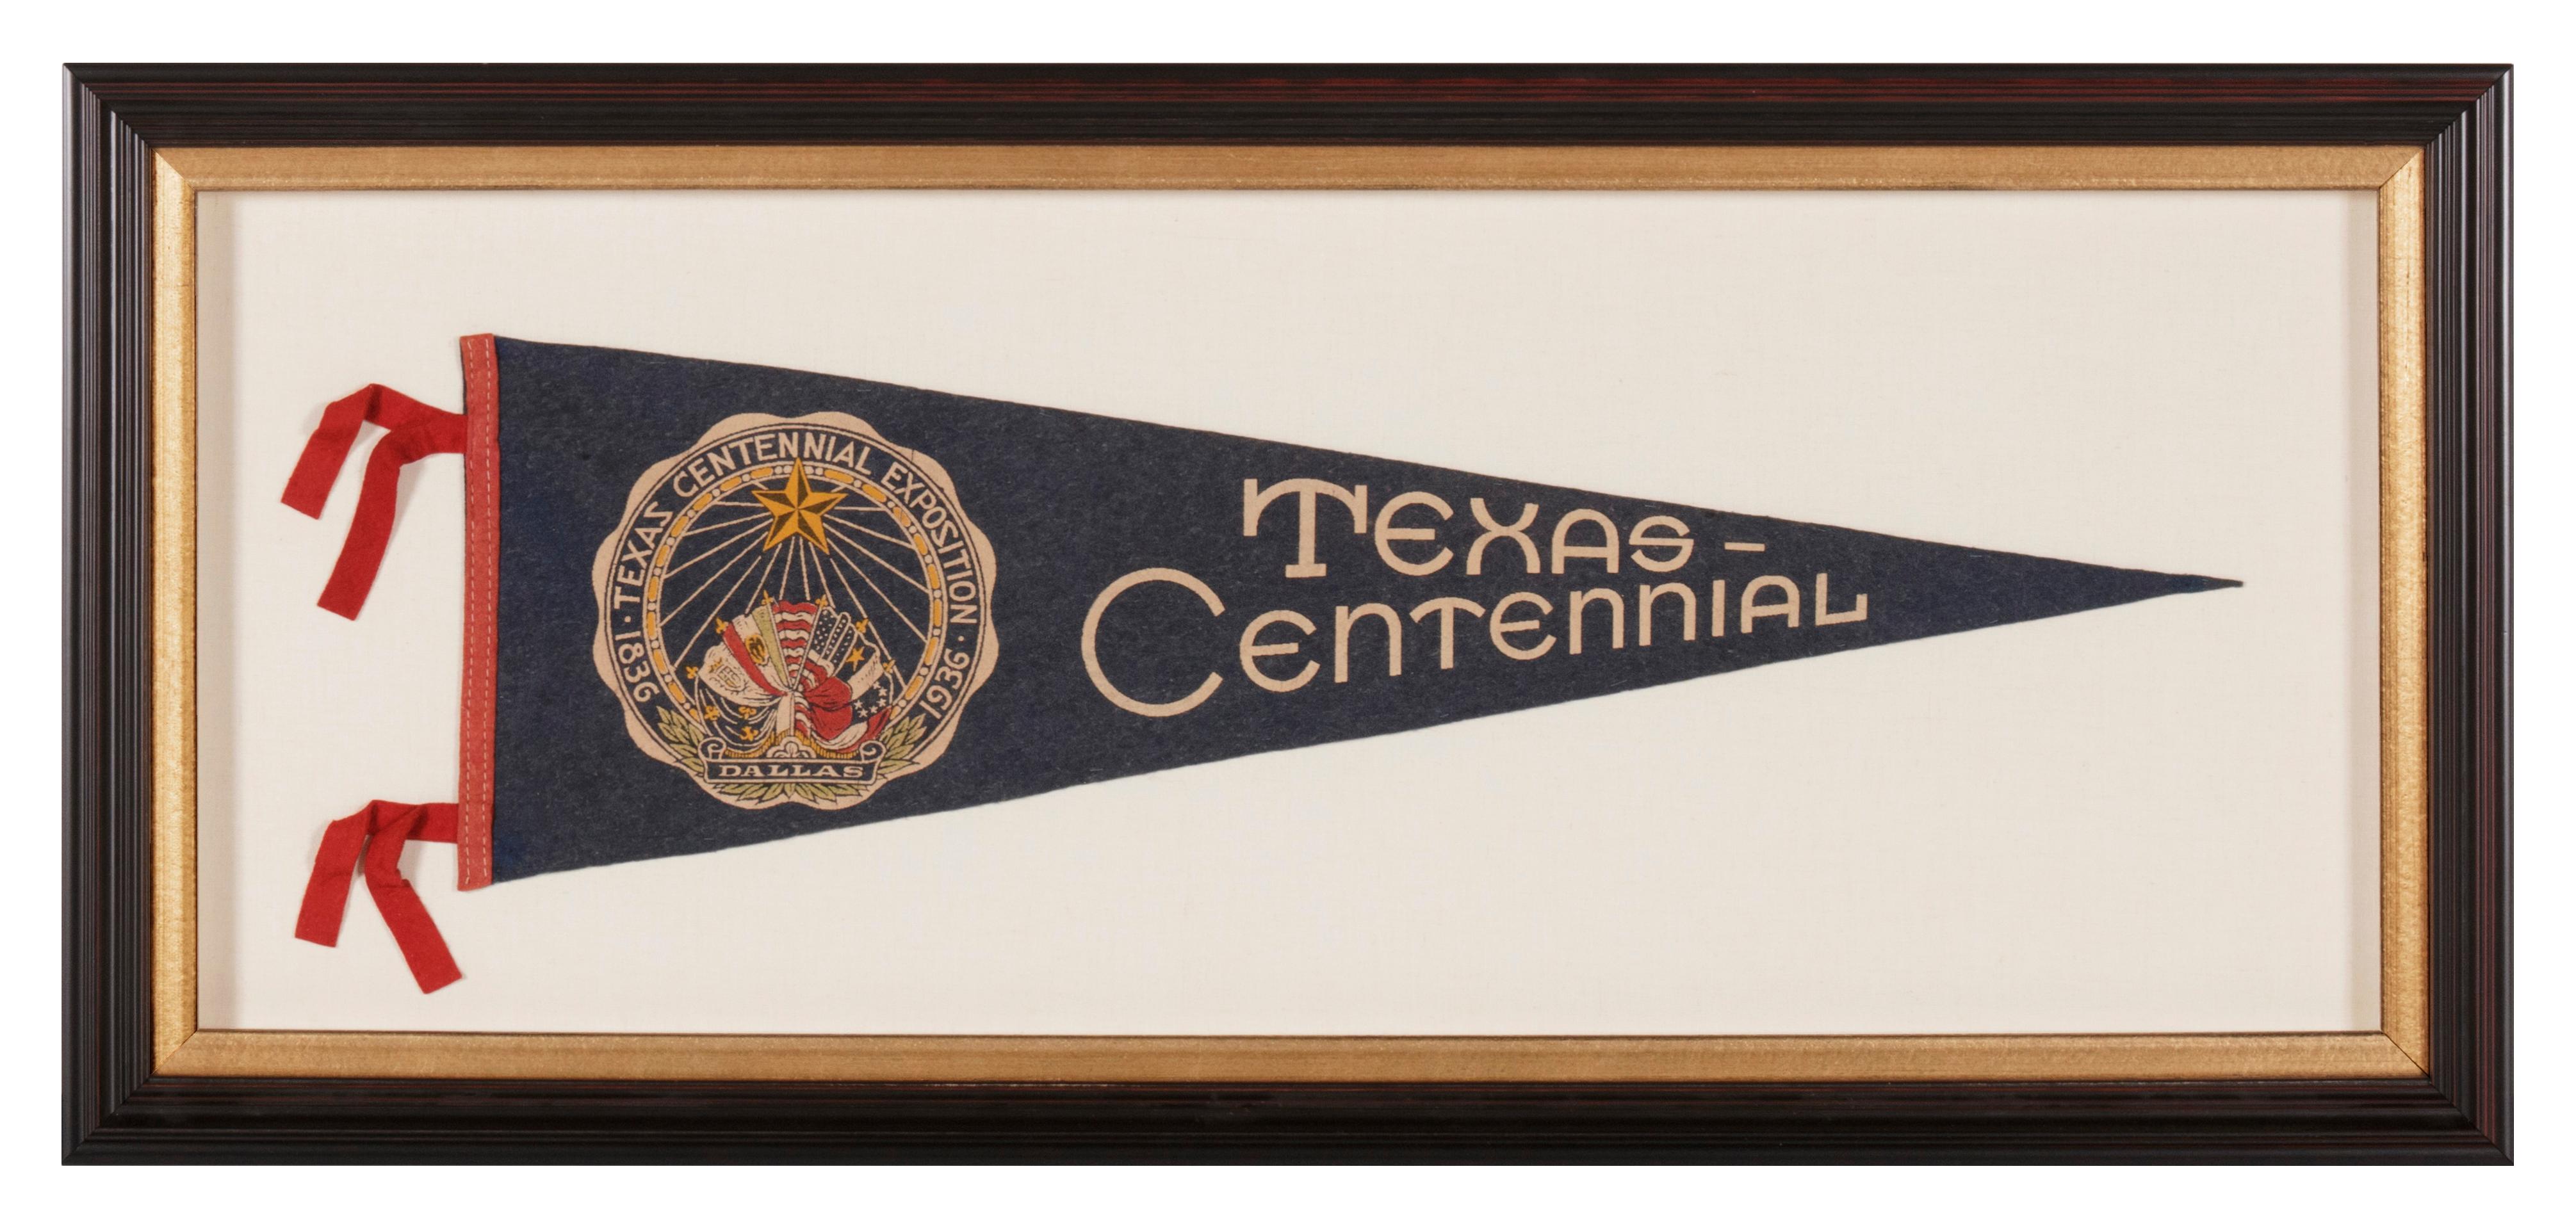 texas centennial exposition 1936